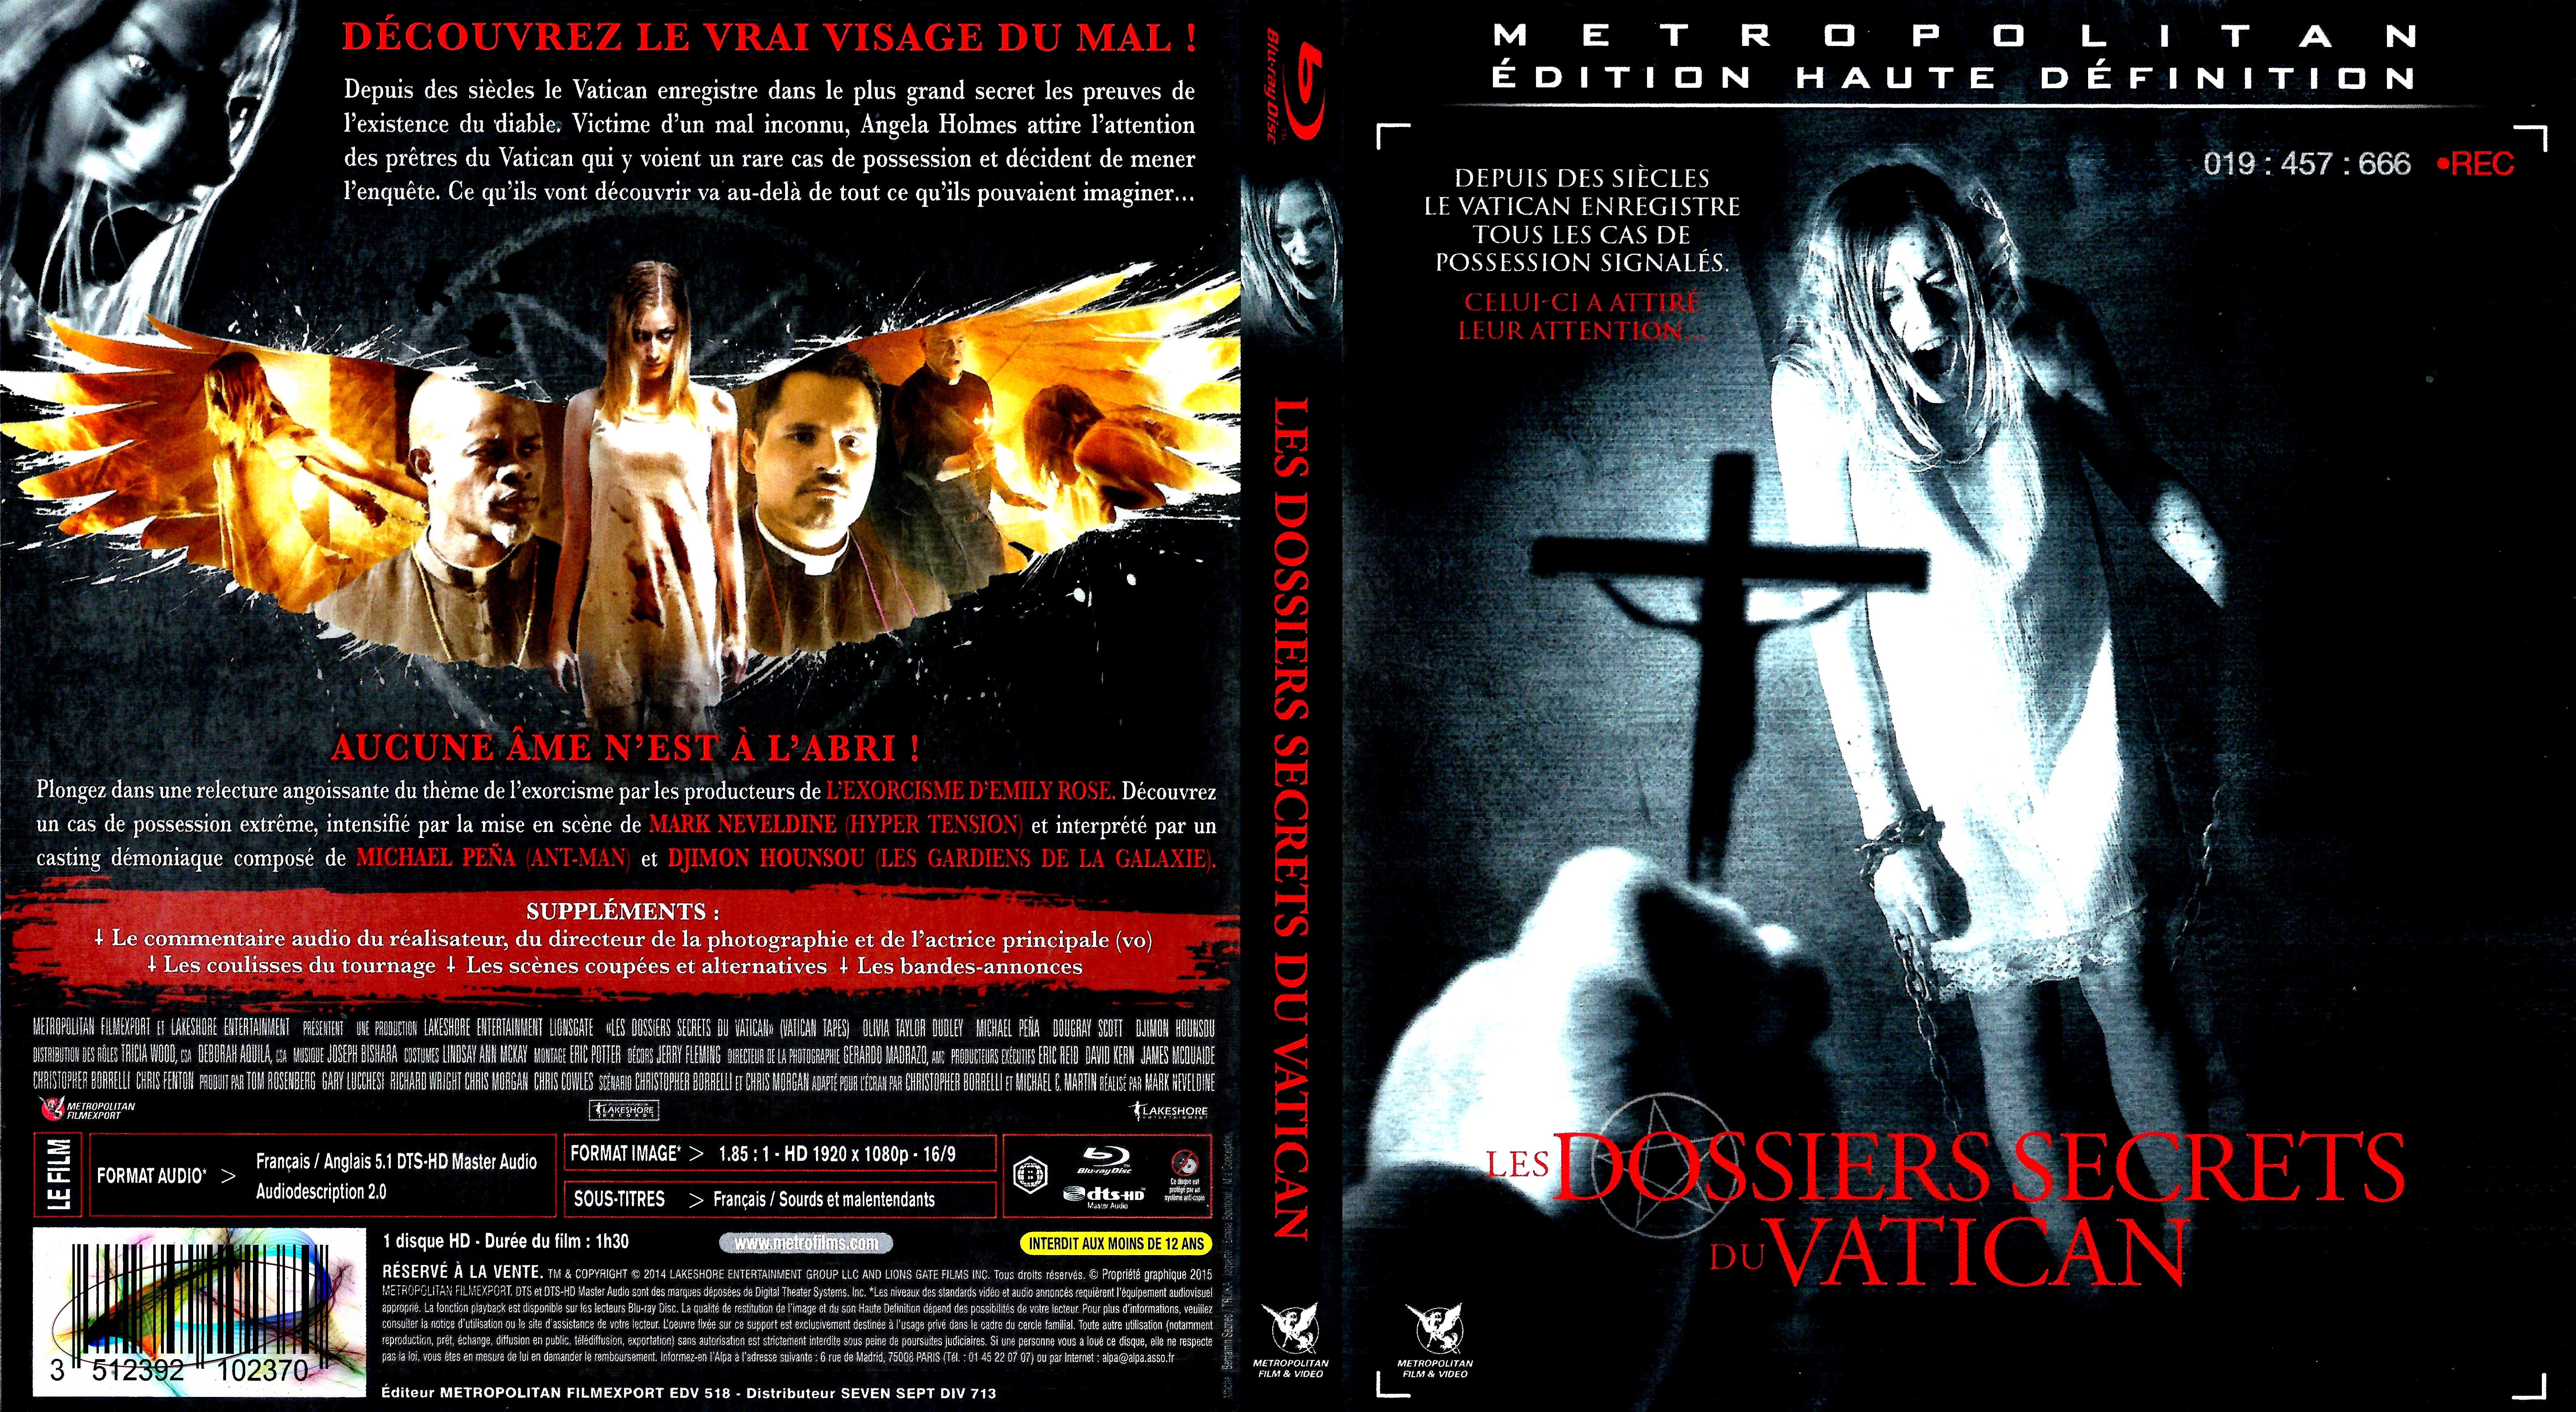 Jaquette DVD Les dossiers secrets du vatican (BLU-RAY)